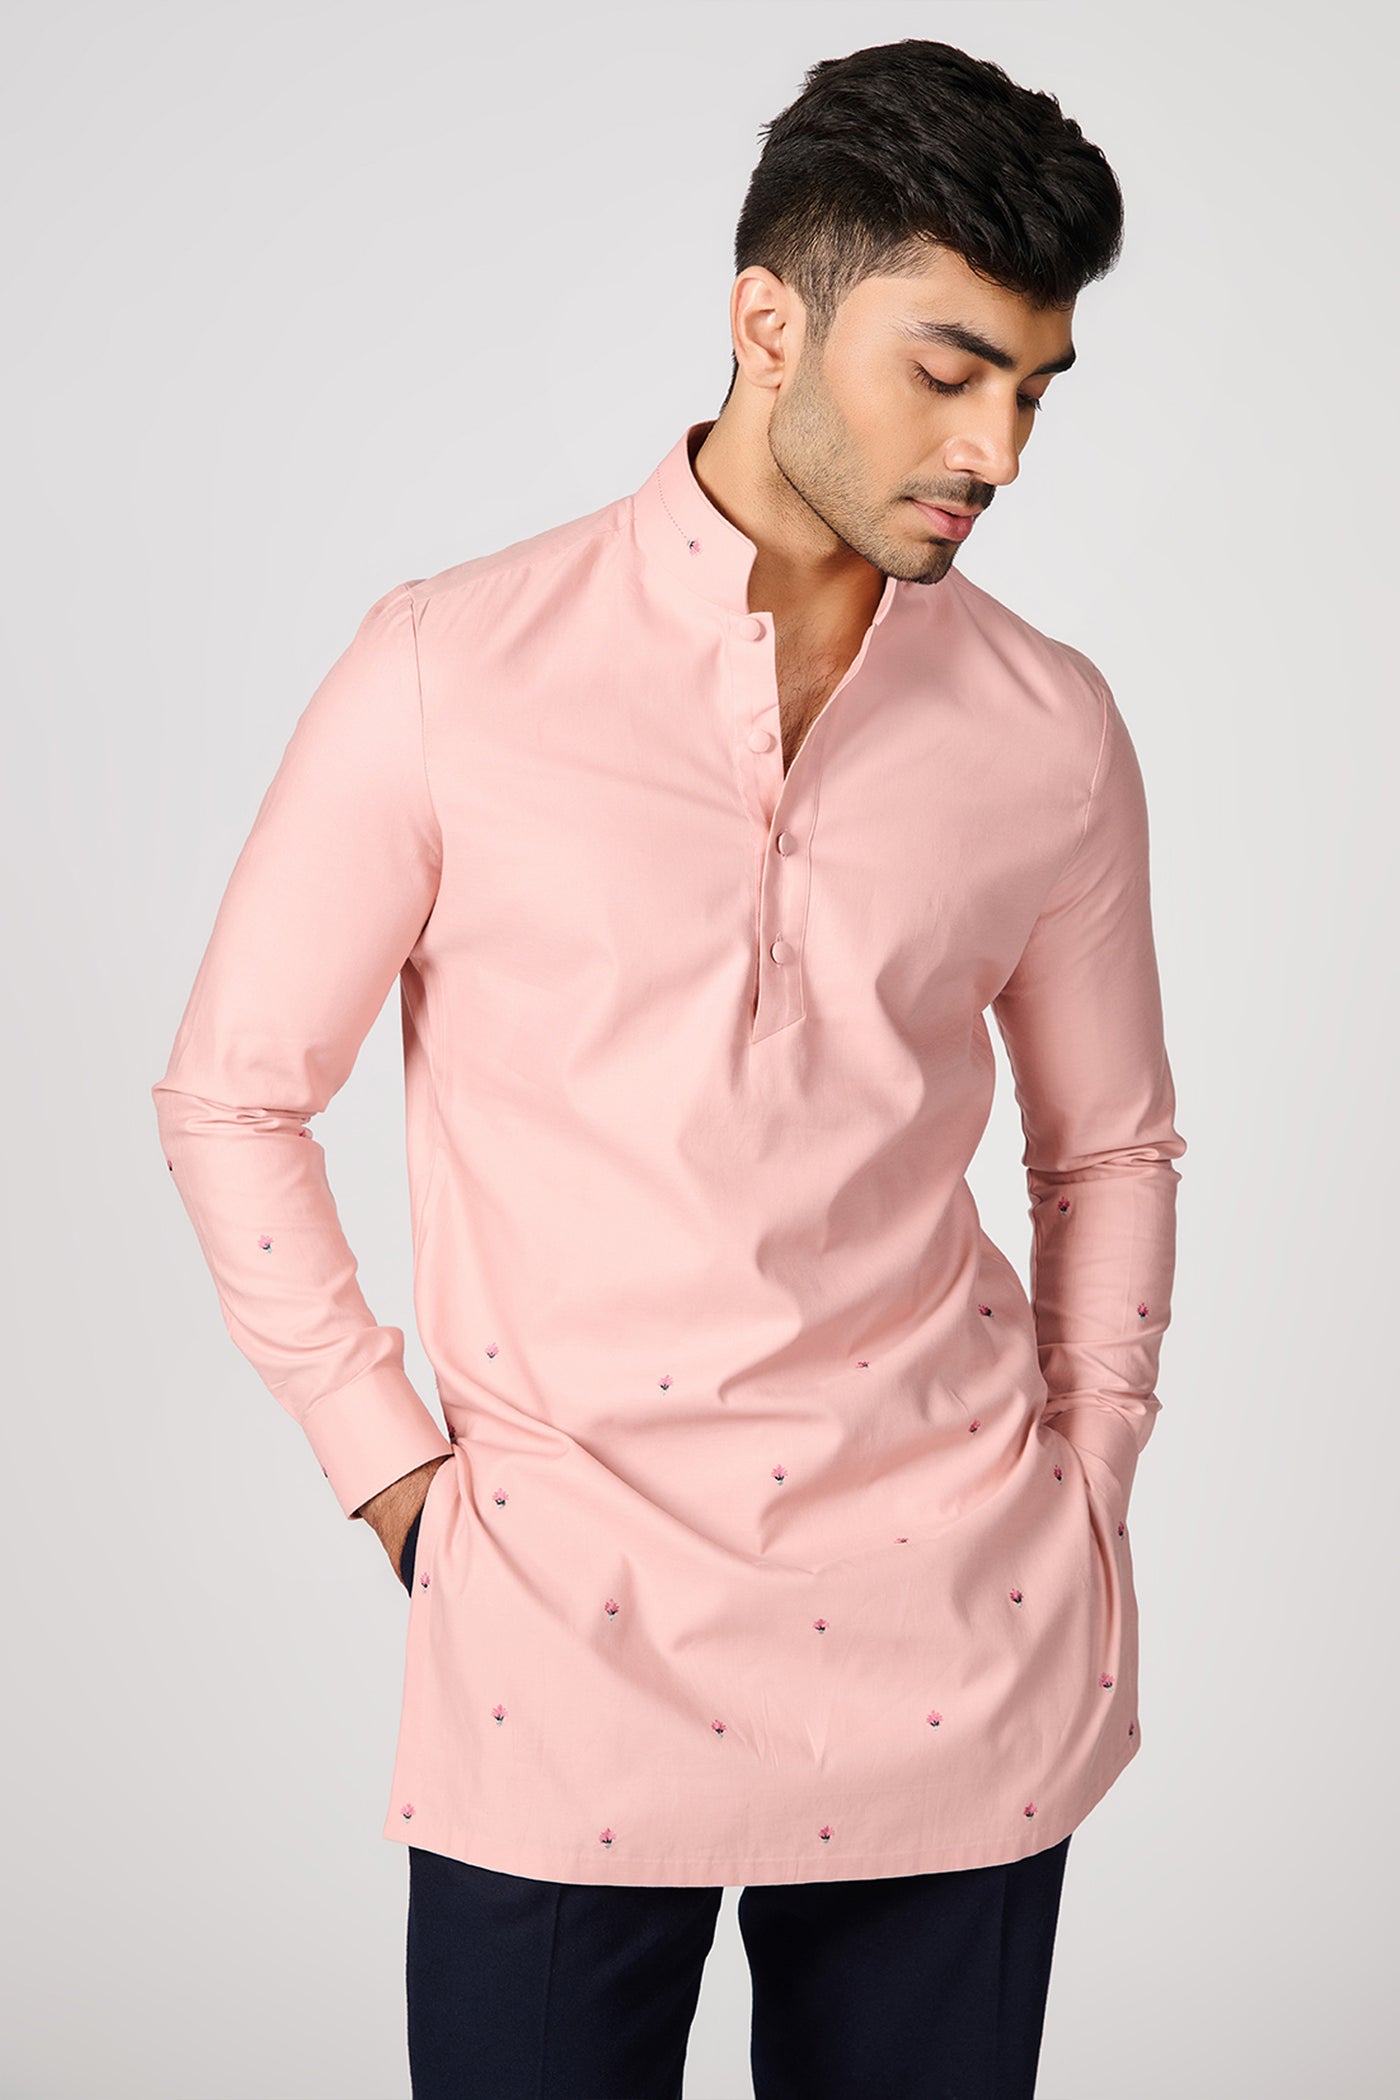 Shantanu & Nikhil Menswear Pink Embroidered Kurta indian designer wear online shopping melange singapore